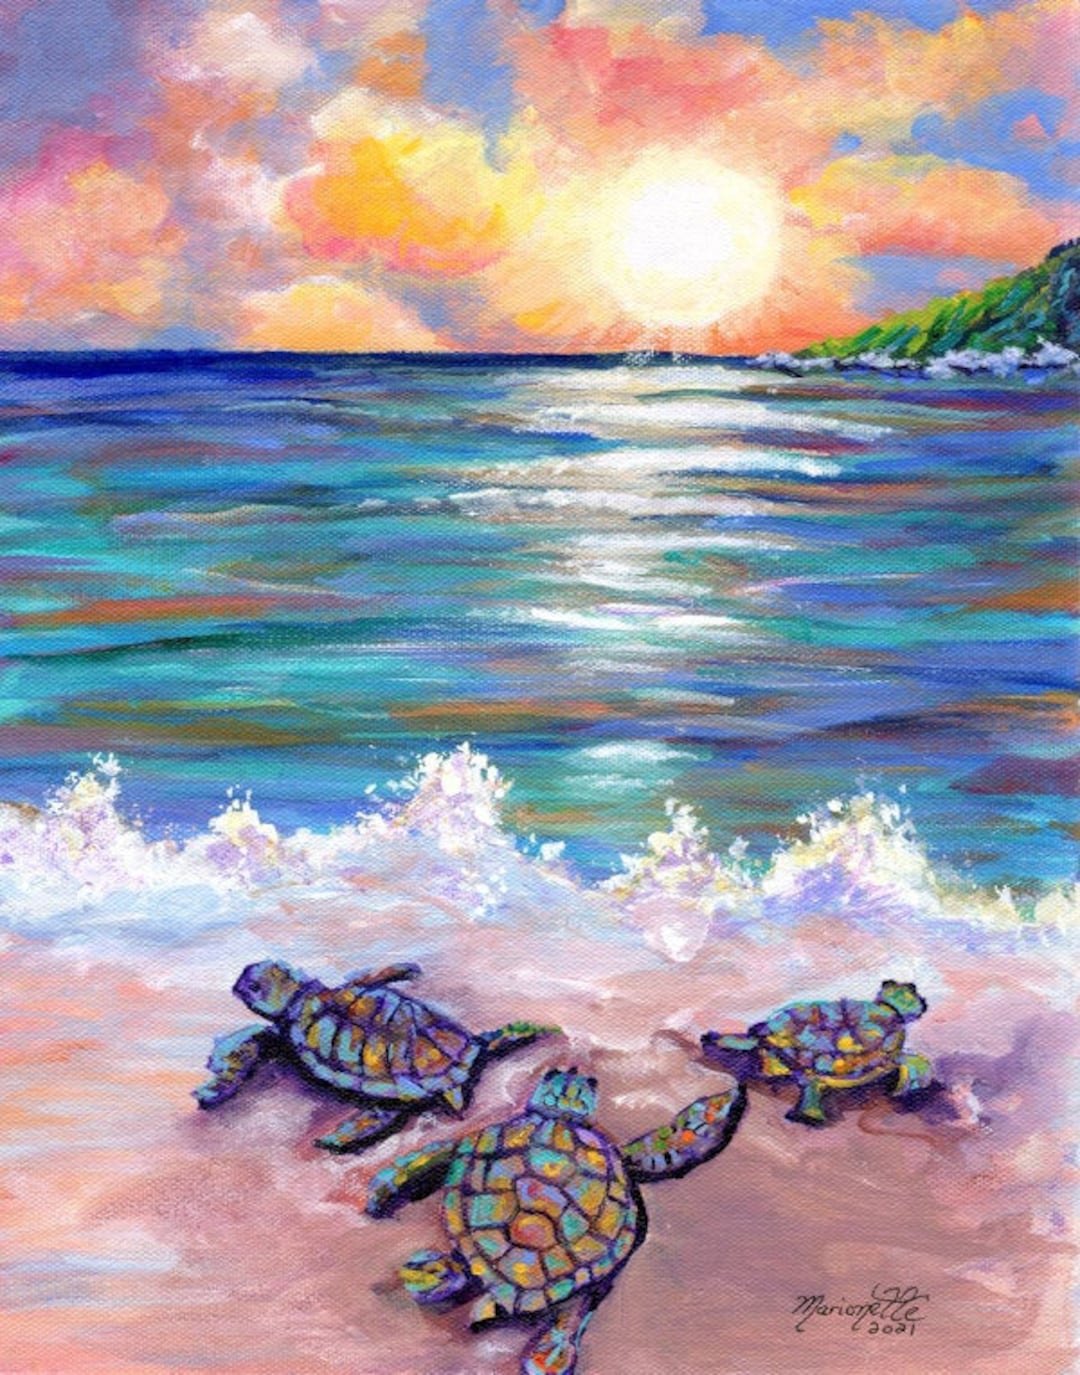 Baby Sea Turtles Kauai Painting Kauai Wall Art Kauai Decor pic